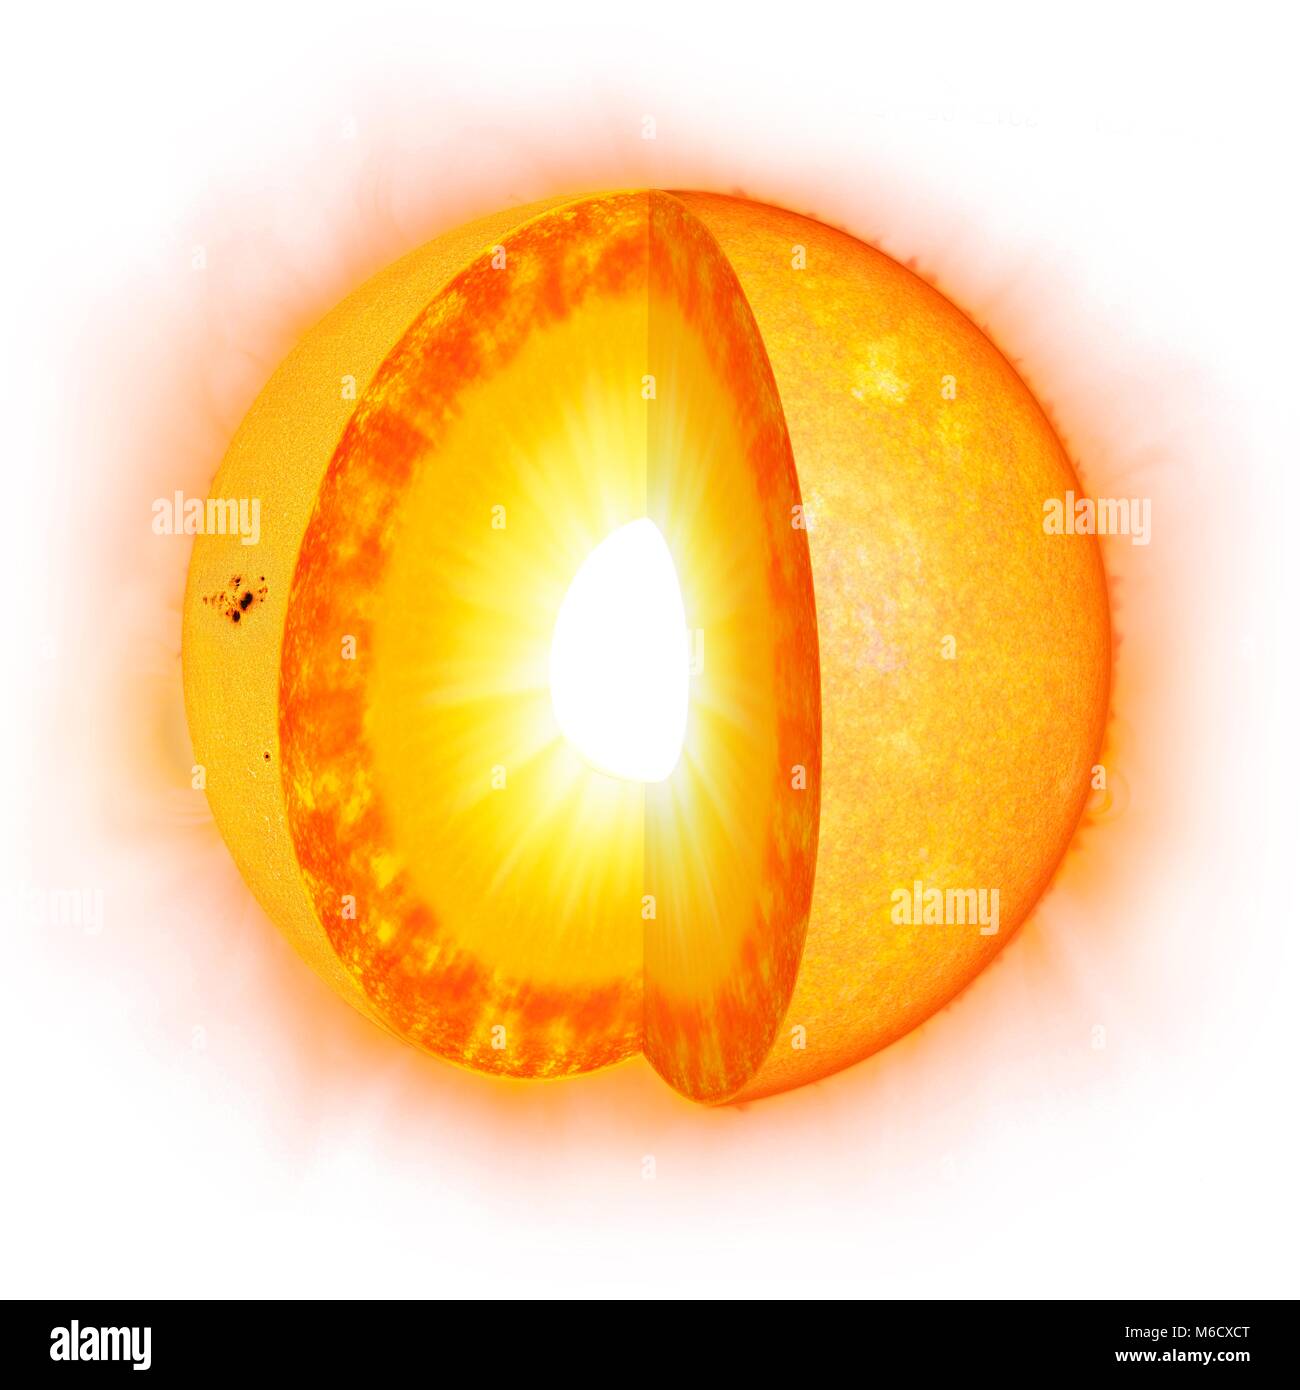 Diagramma che mostra la parte interna del sole il solare interno è costituito da un nucleo centrale (30%) di una zona radiante al di fuori di questo, e quindi un strato convettivo che occupa il più esterno 30% o così. Infine vi è il sole visibile 'surface', chiamato photoshphere. Foto Stock